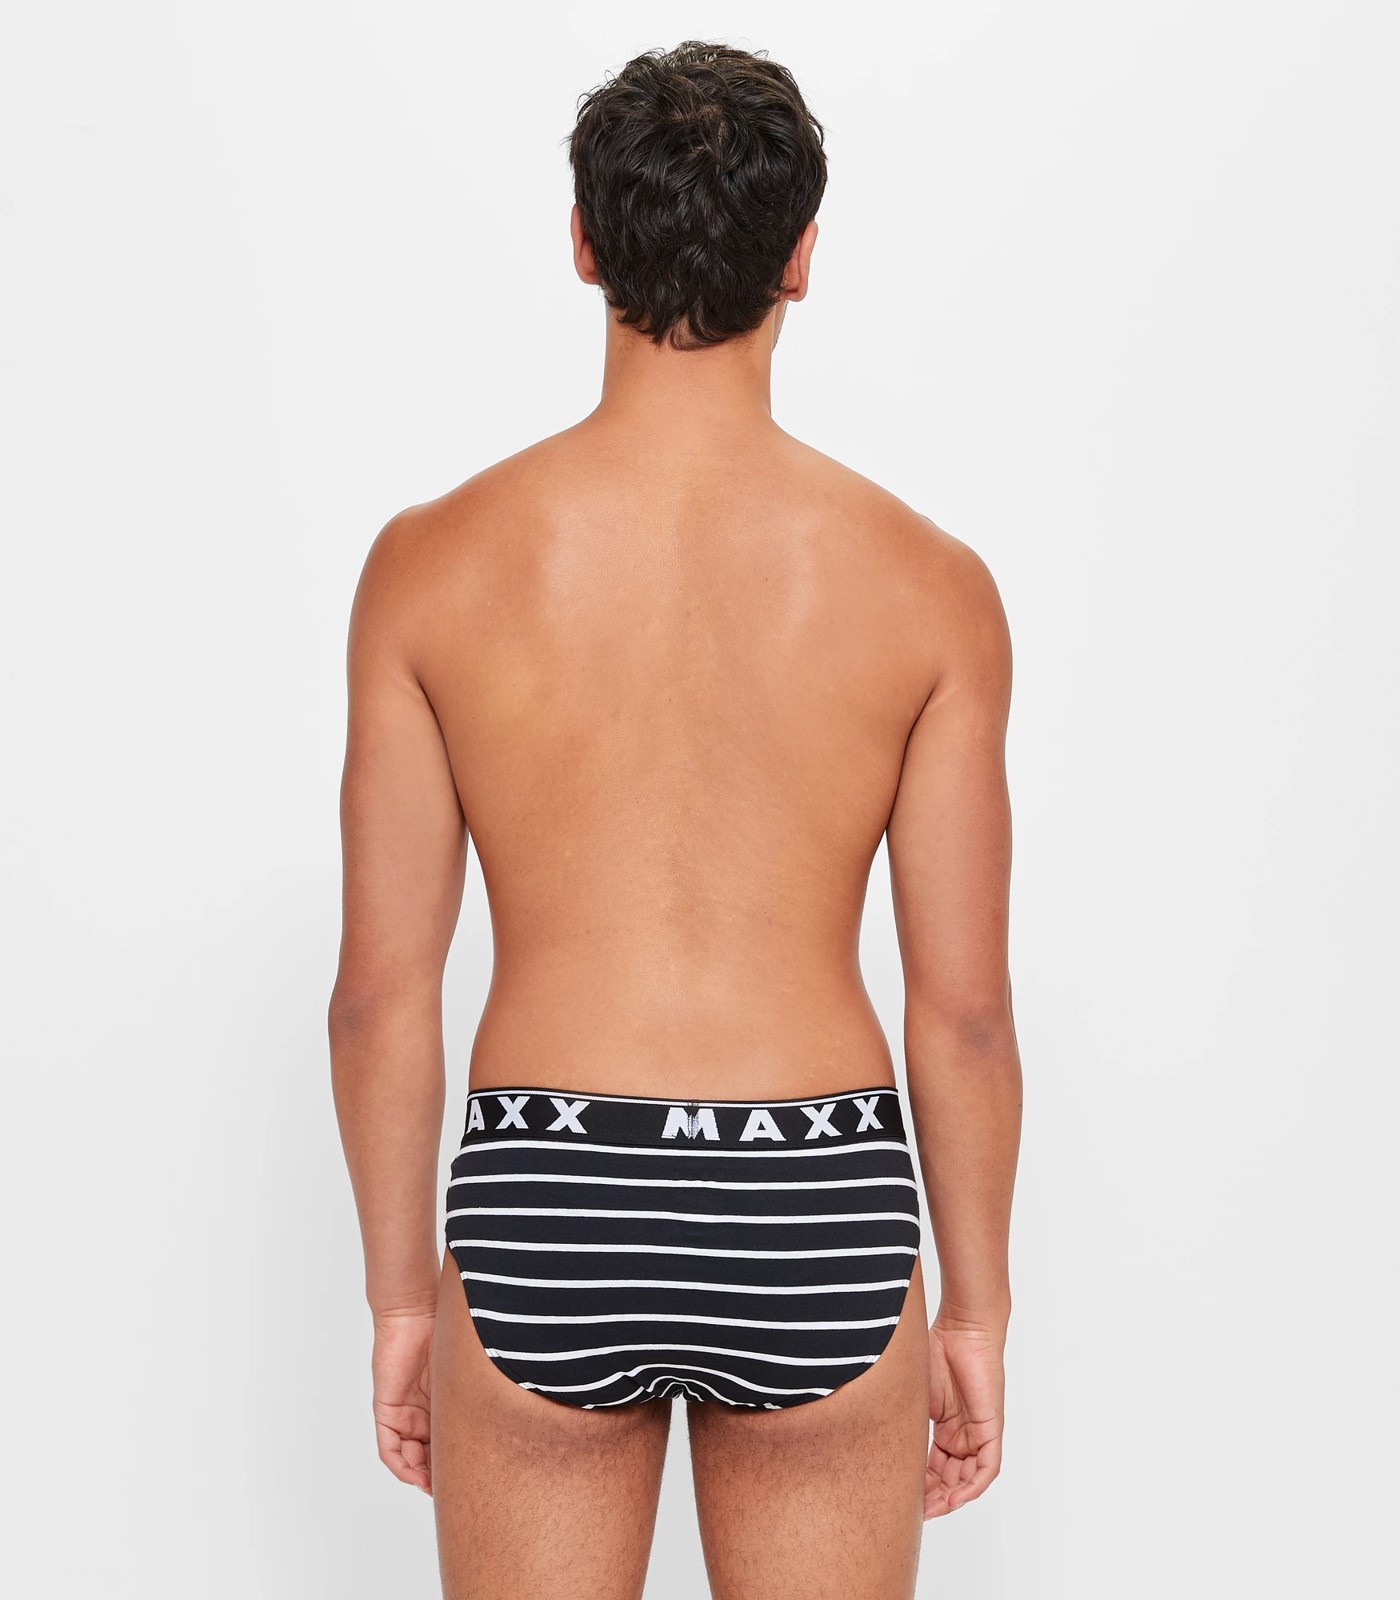 BNWT MENS MAXX UNDERWEAR (SIZE M) - Underwear - Perth, Western Australia, Facebook Marketplace